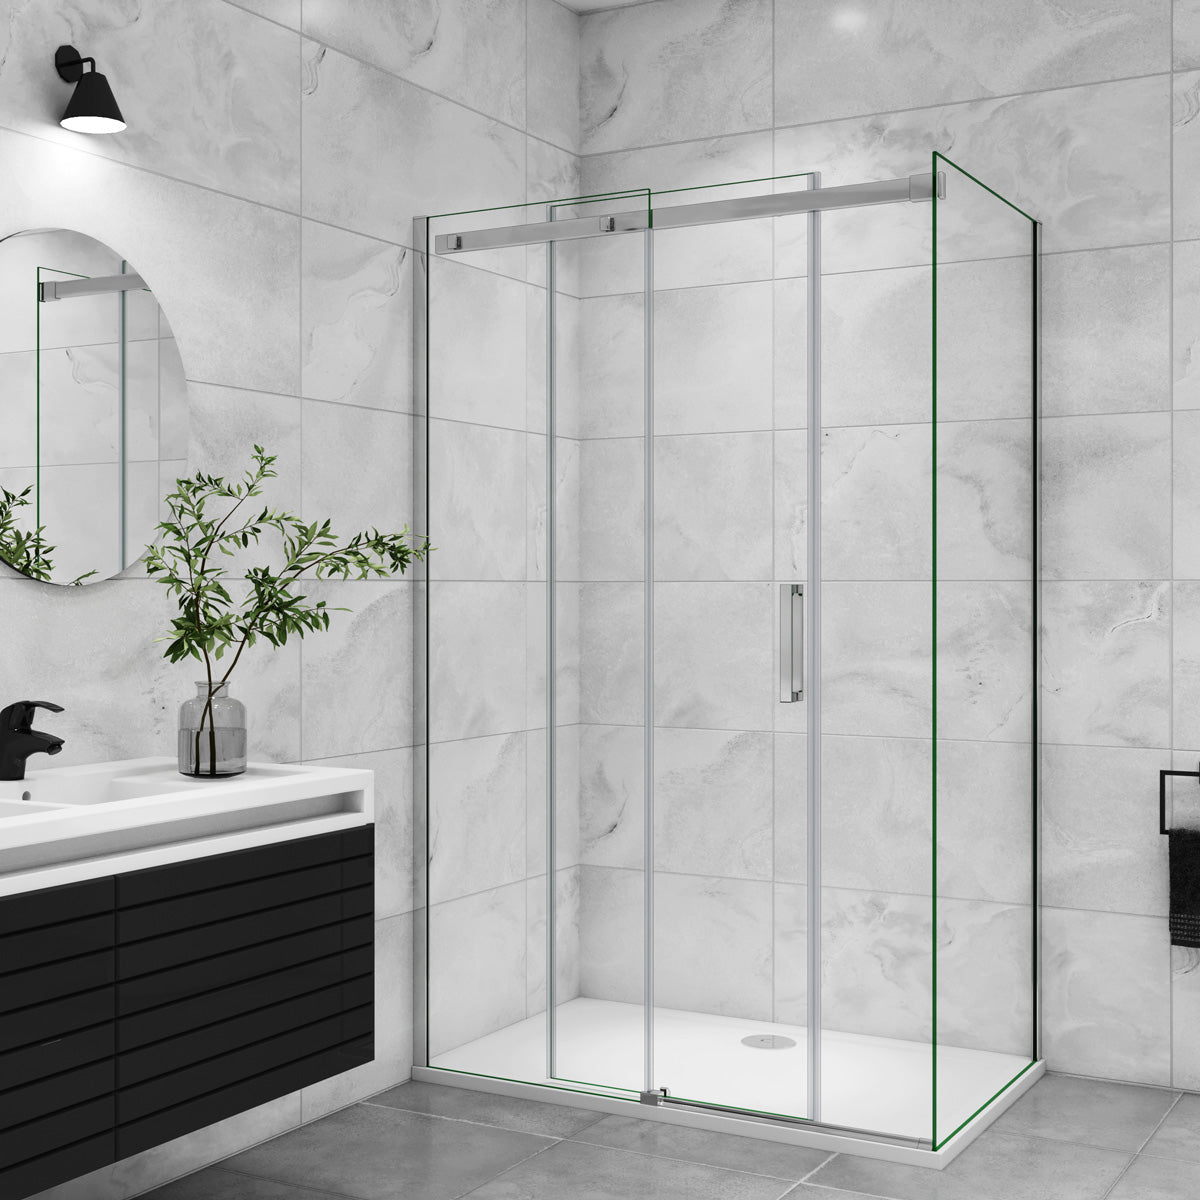 Duschtür+Seitenwand Schiebetür 140x90 cm Glasstärke 8mm Dusche Duschabtrennung Duschkabine